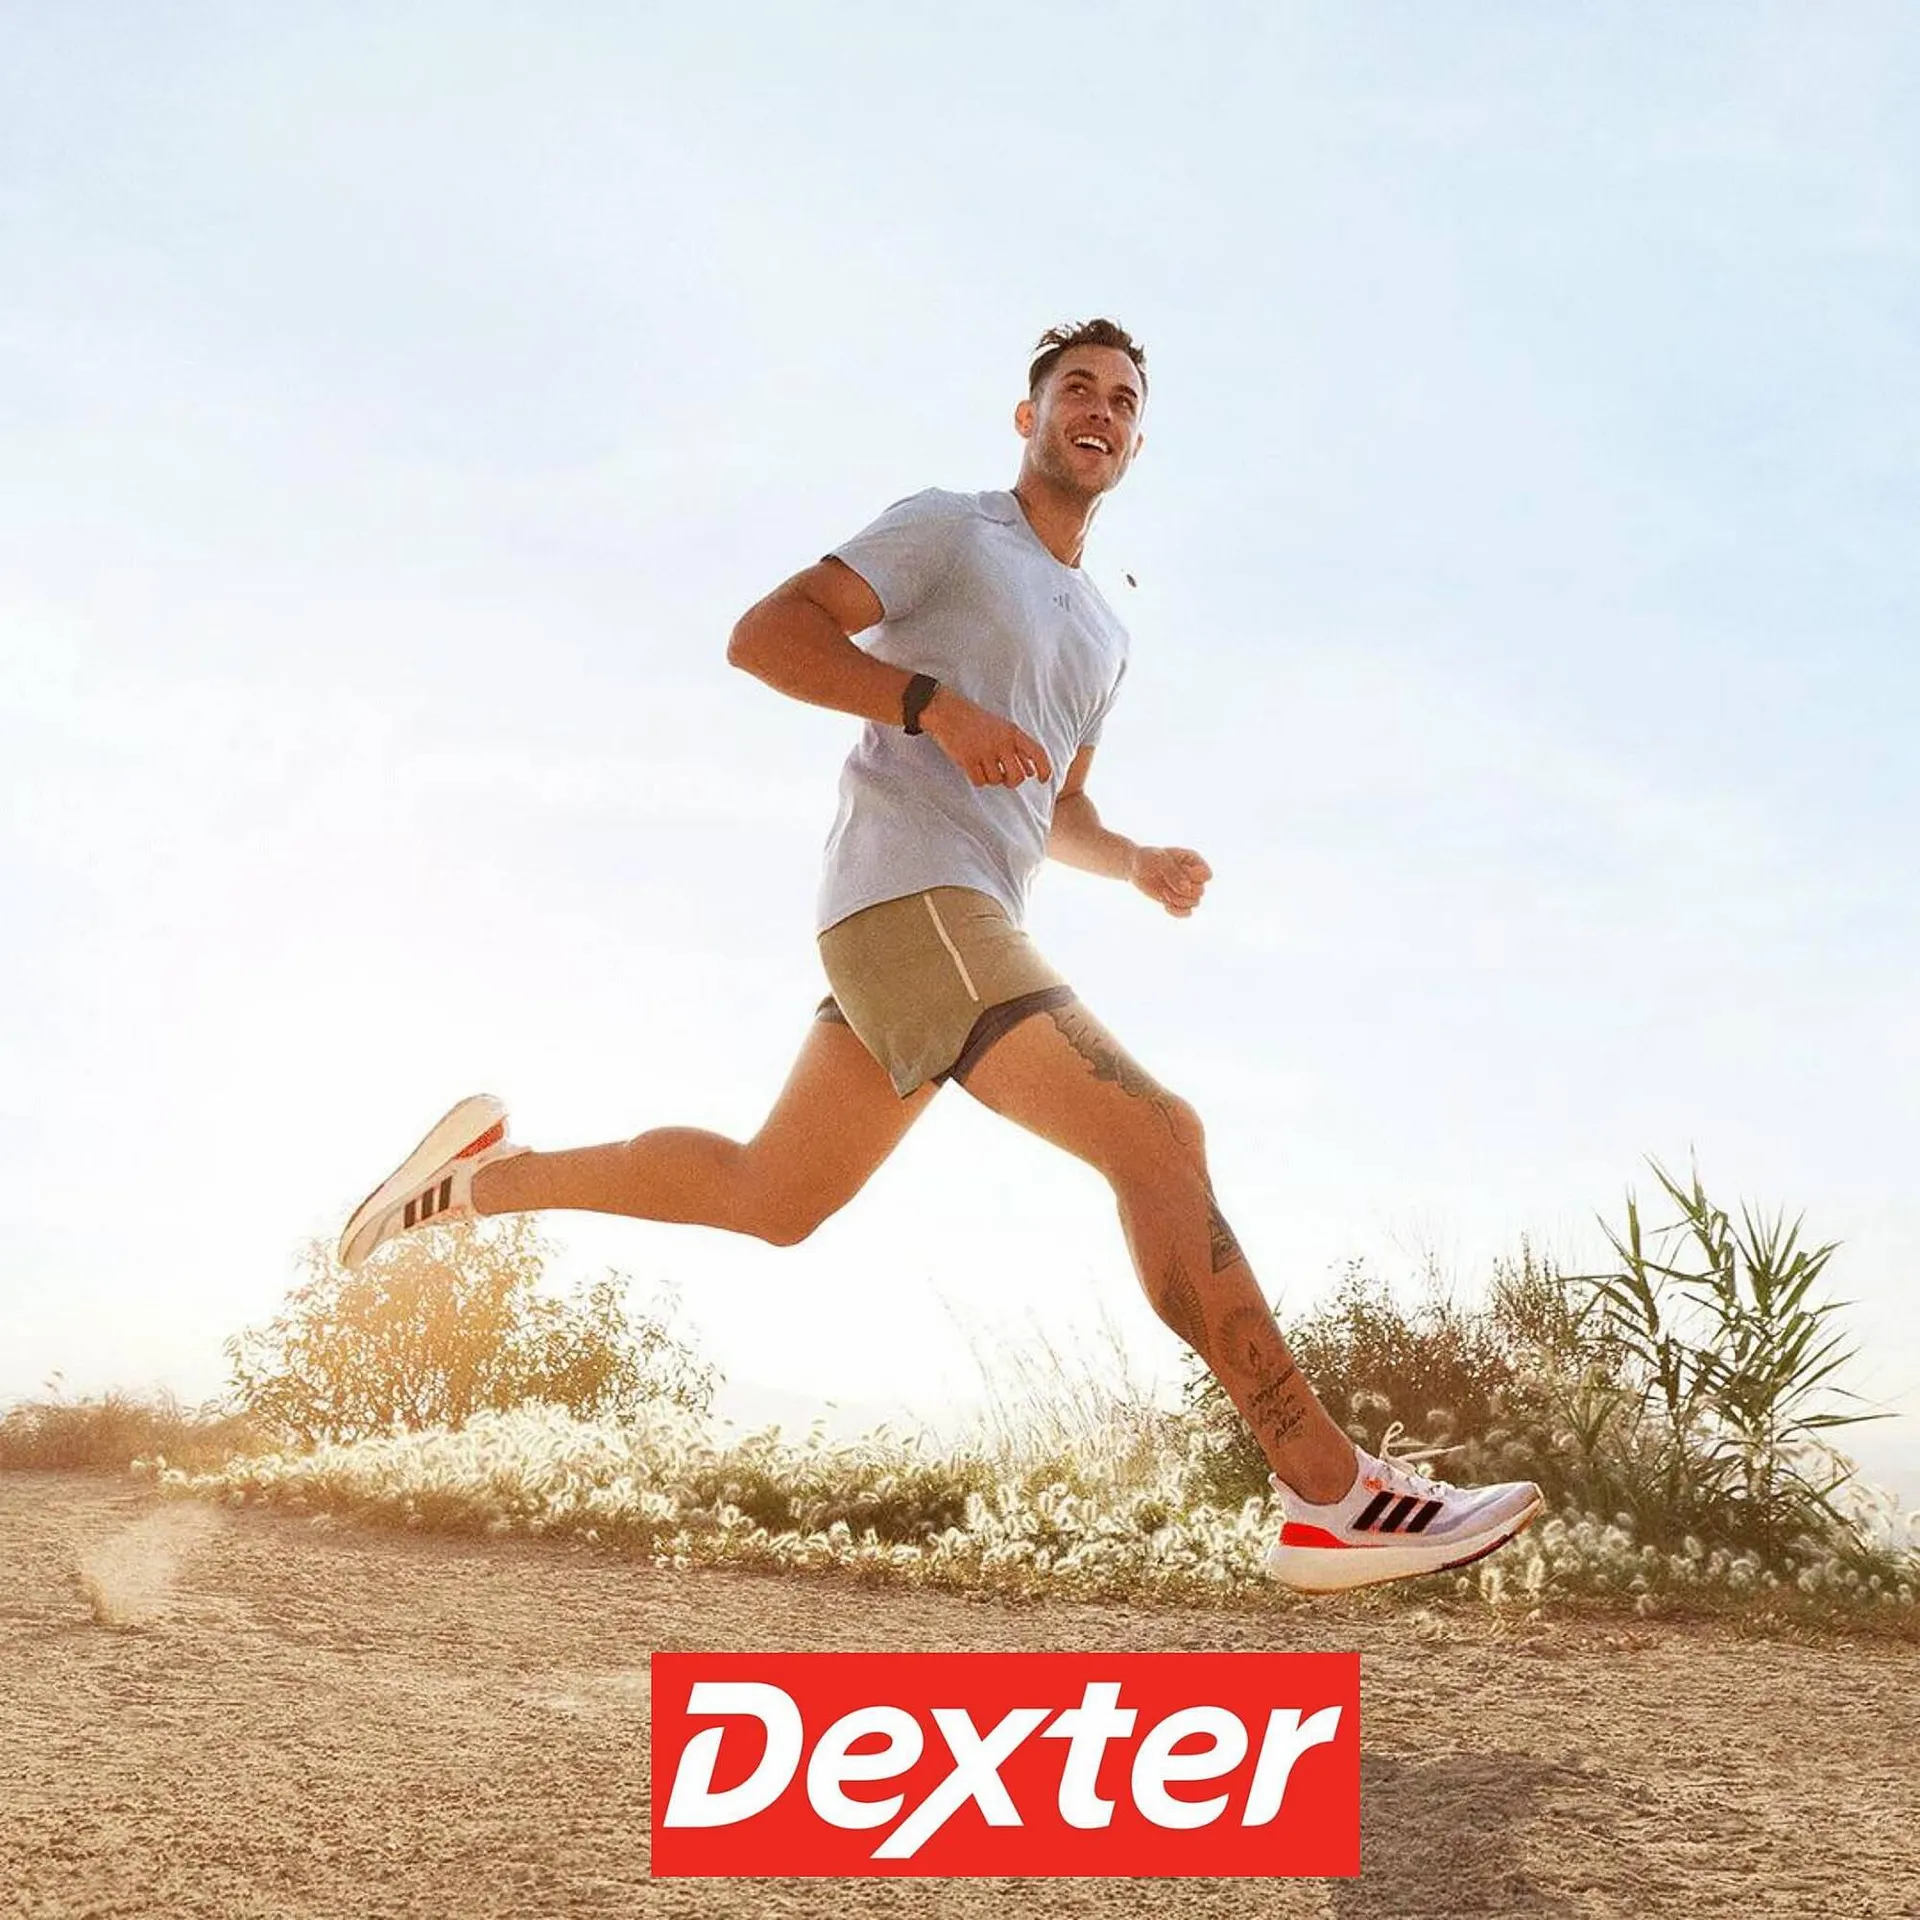 Catálogo Dexter - 1